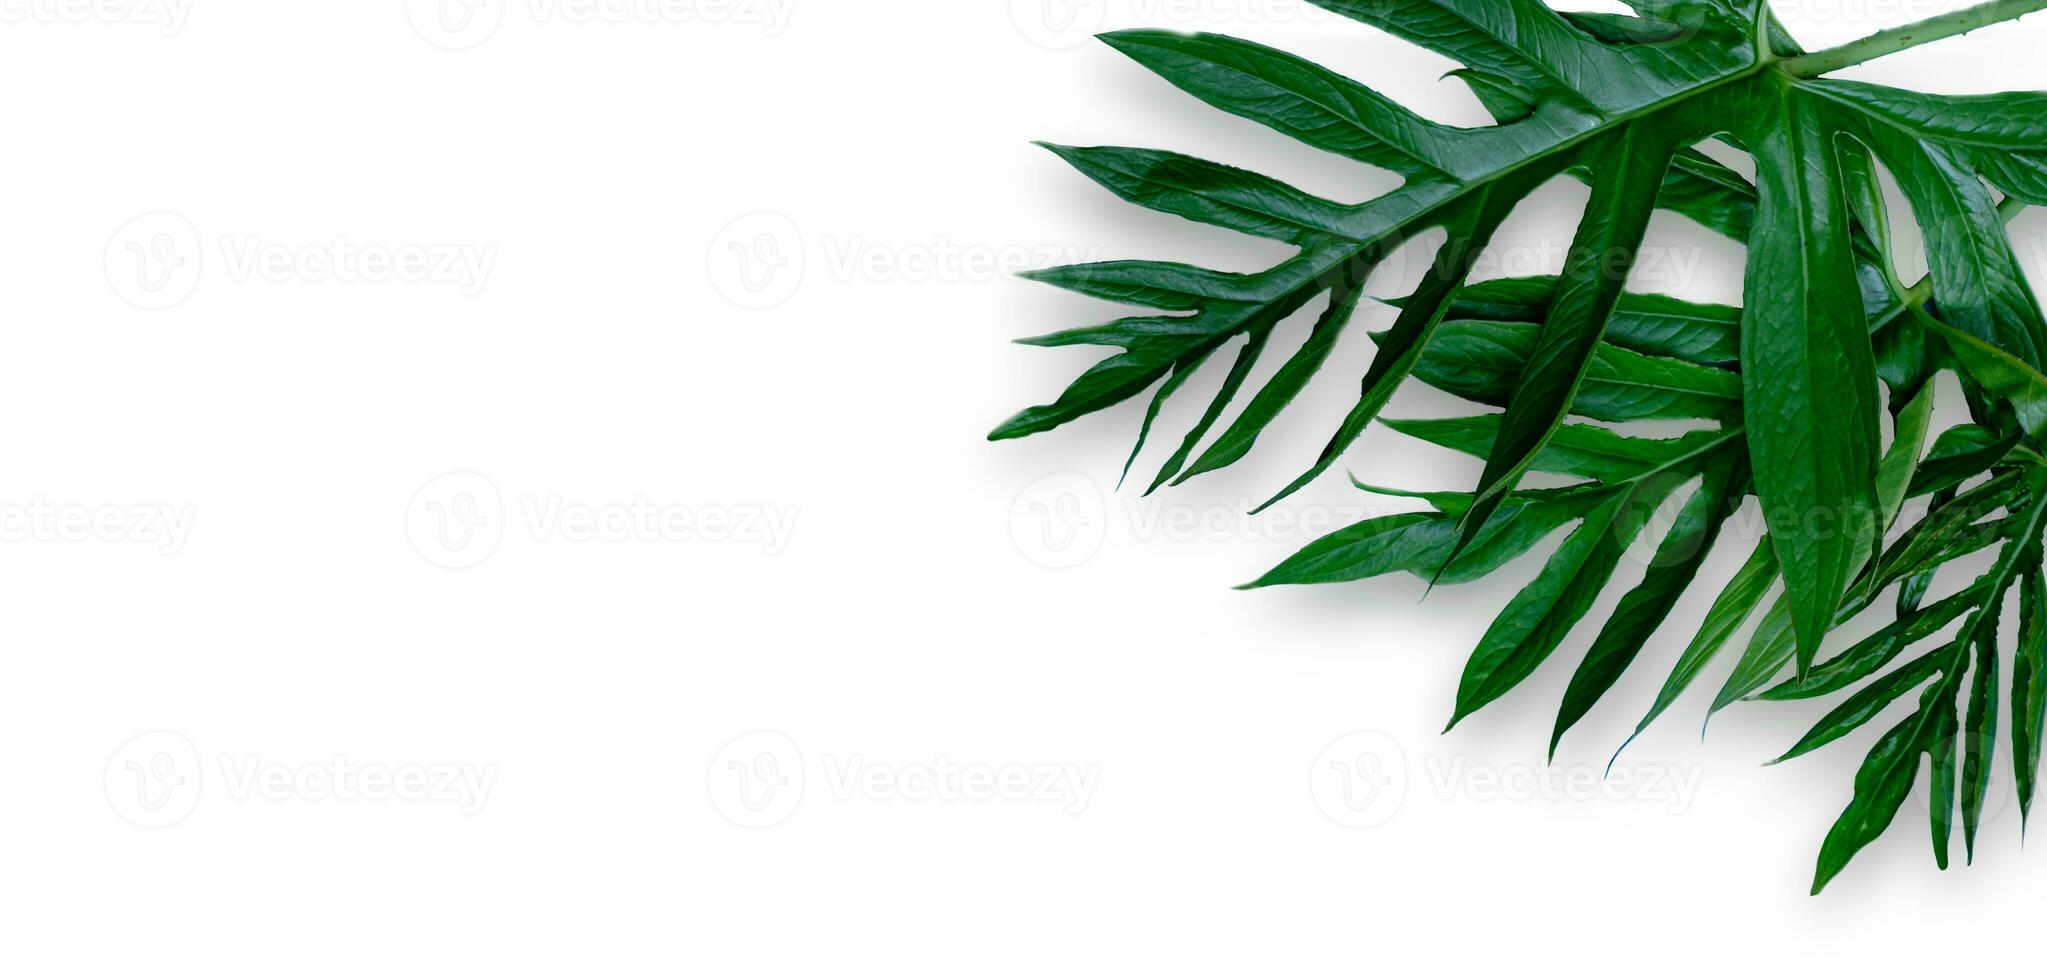 Blatt von Phak Naam Lasia Spinosa, einer Pflanze aus der Familie der Araceae auf weißem Hintergrund foto